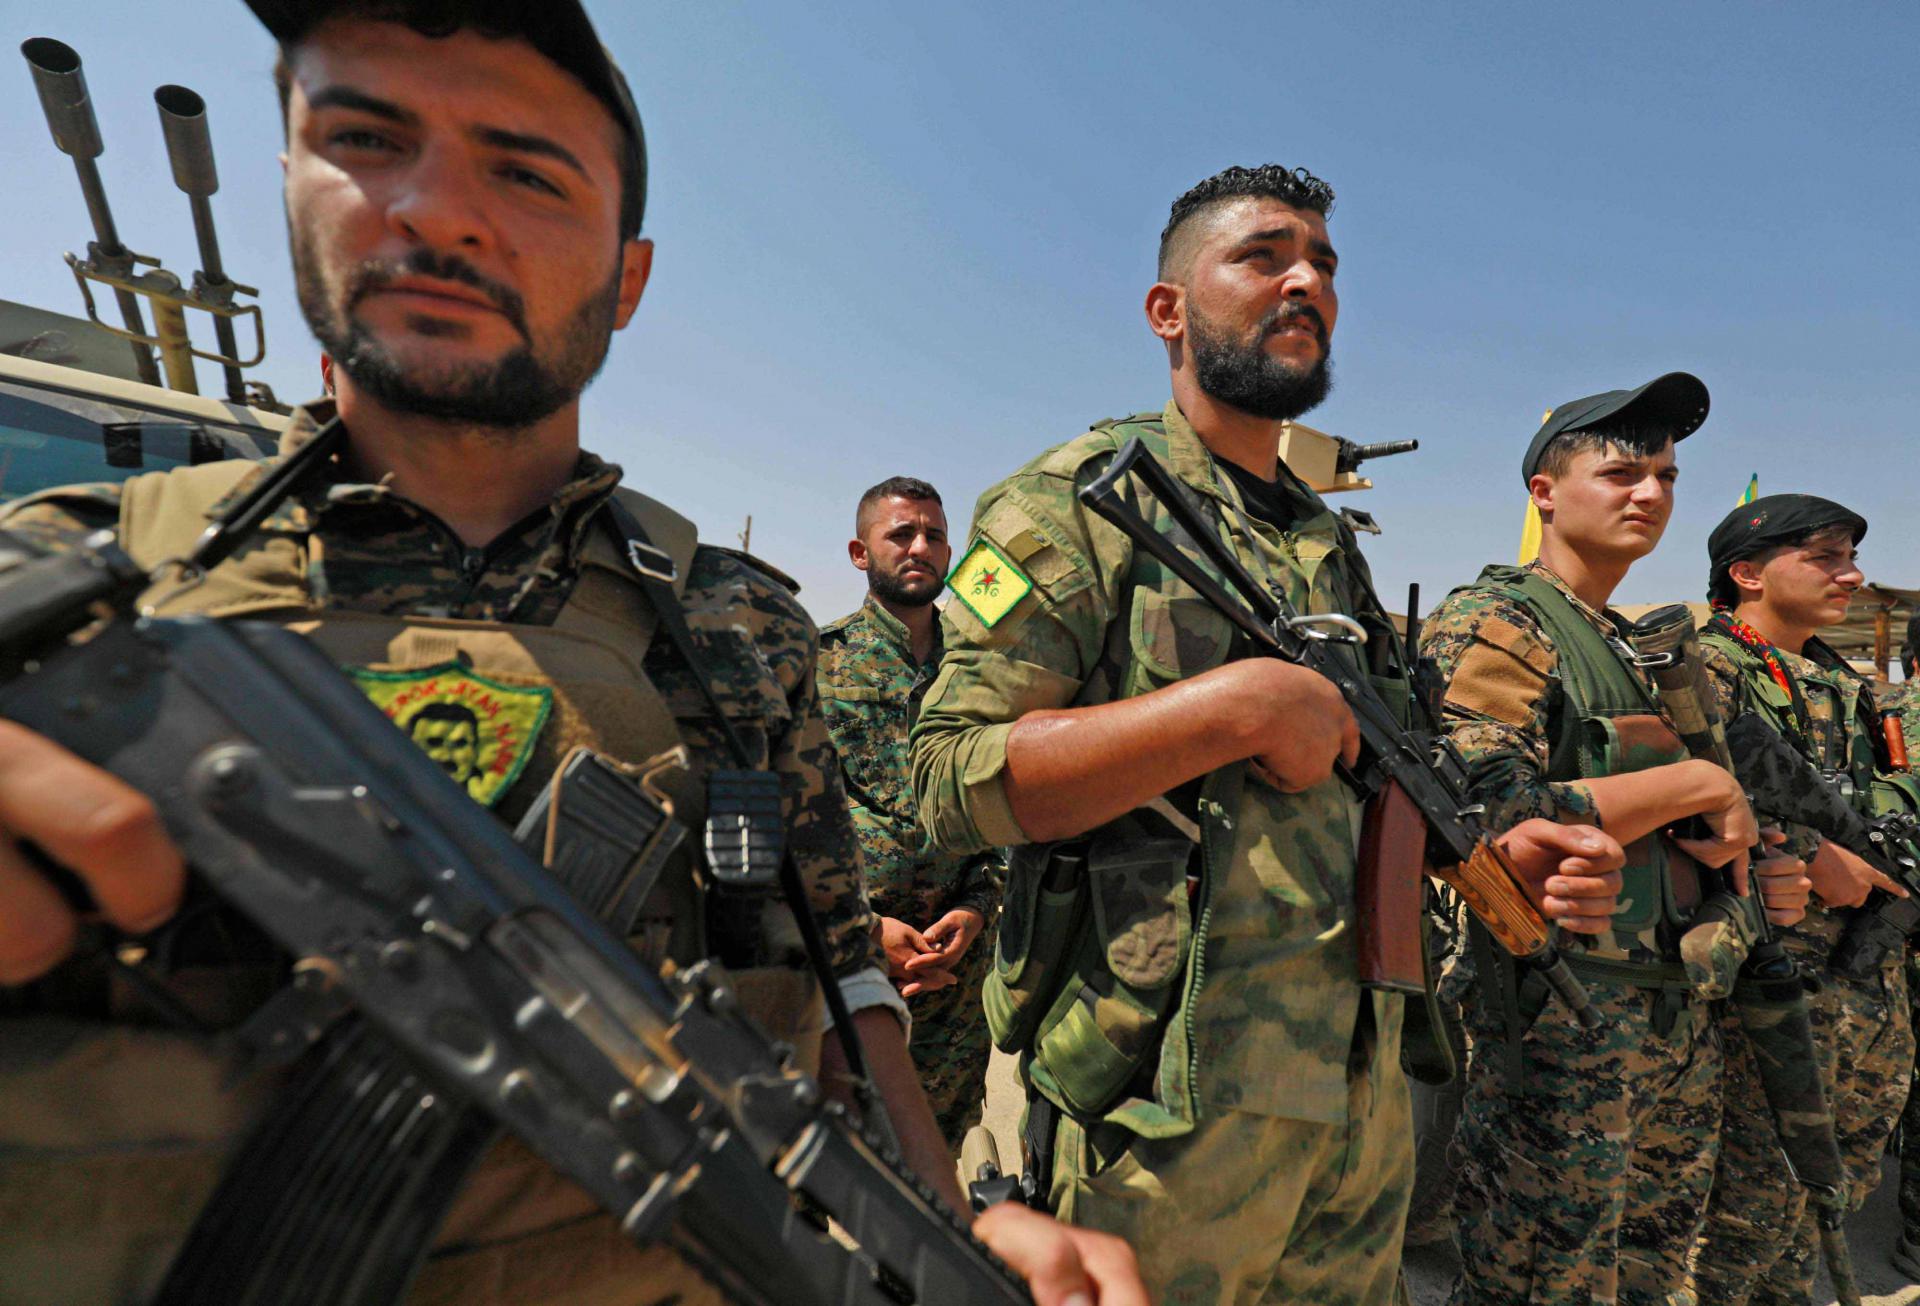 Μακελείο του τουρκικού στρατού σε βάση τους στο Ιράκ – Επίθεση των Κούρδων οδήγησε στο θάνατο 16 στρατιώτες